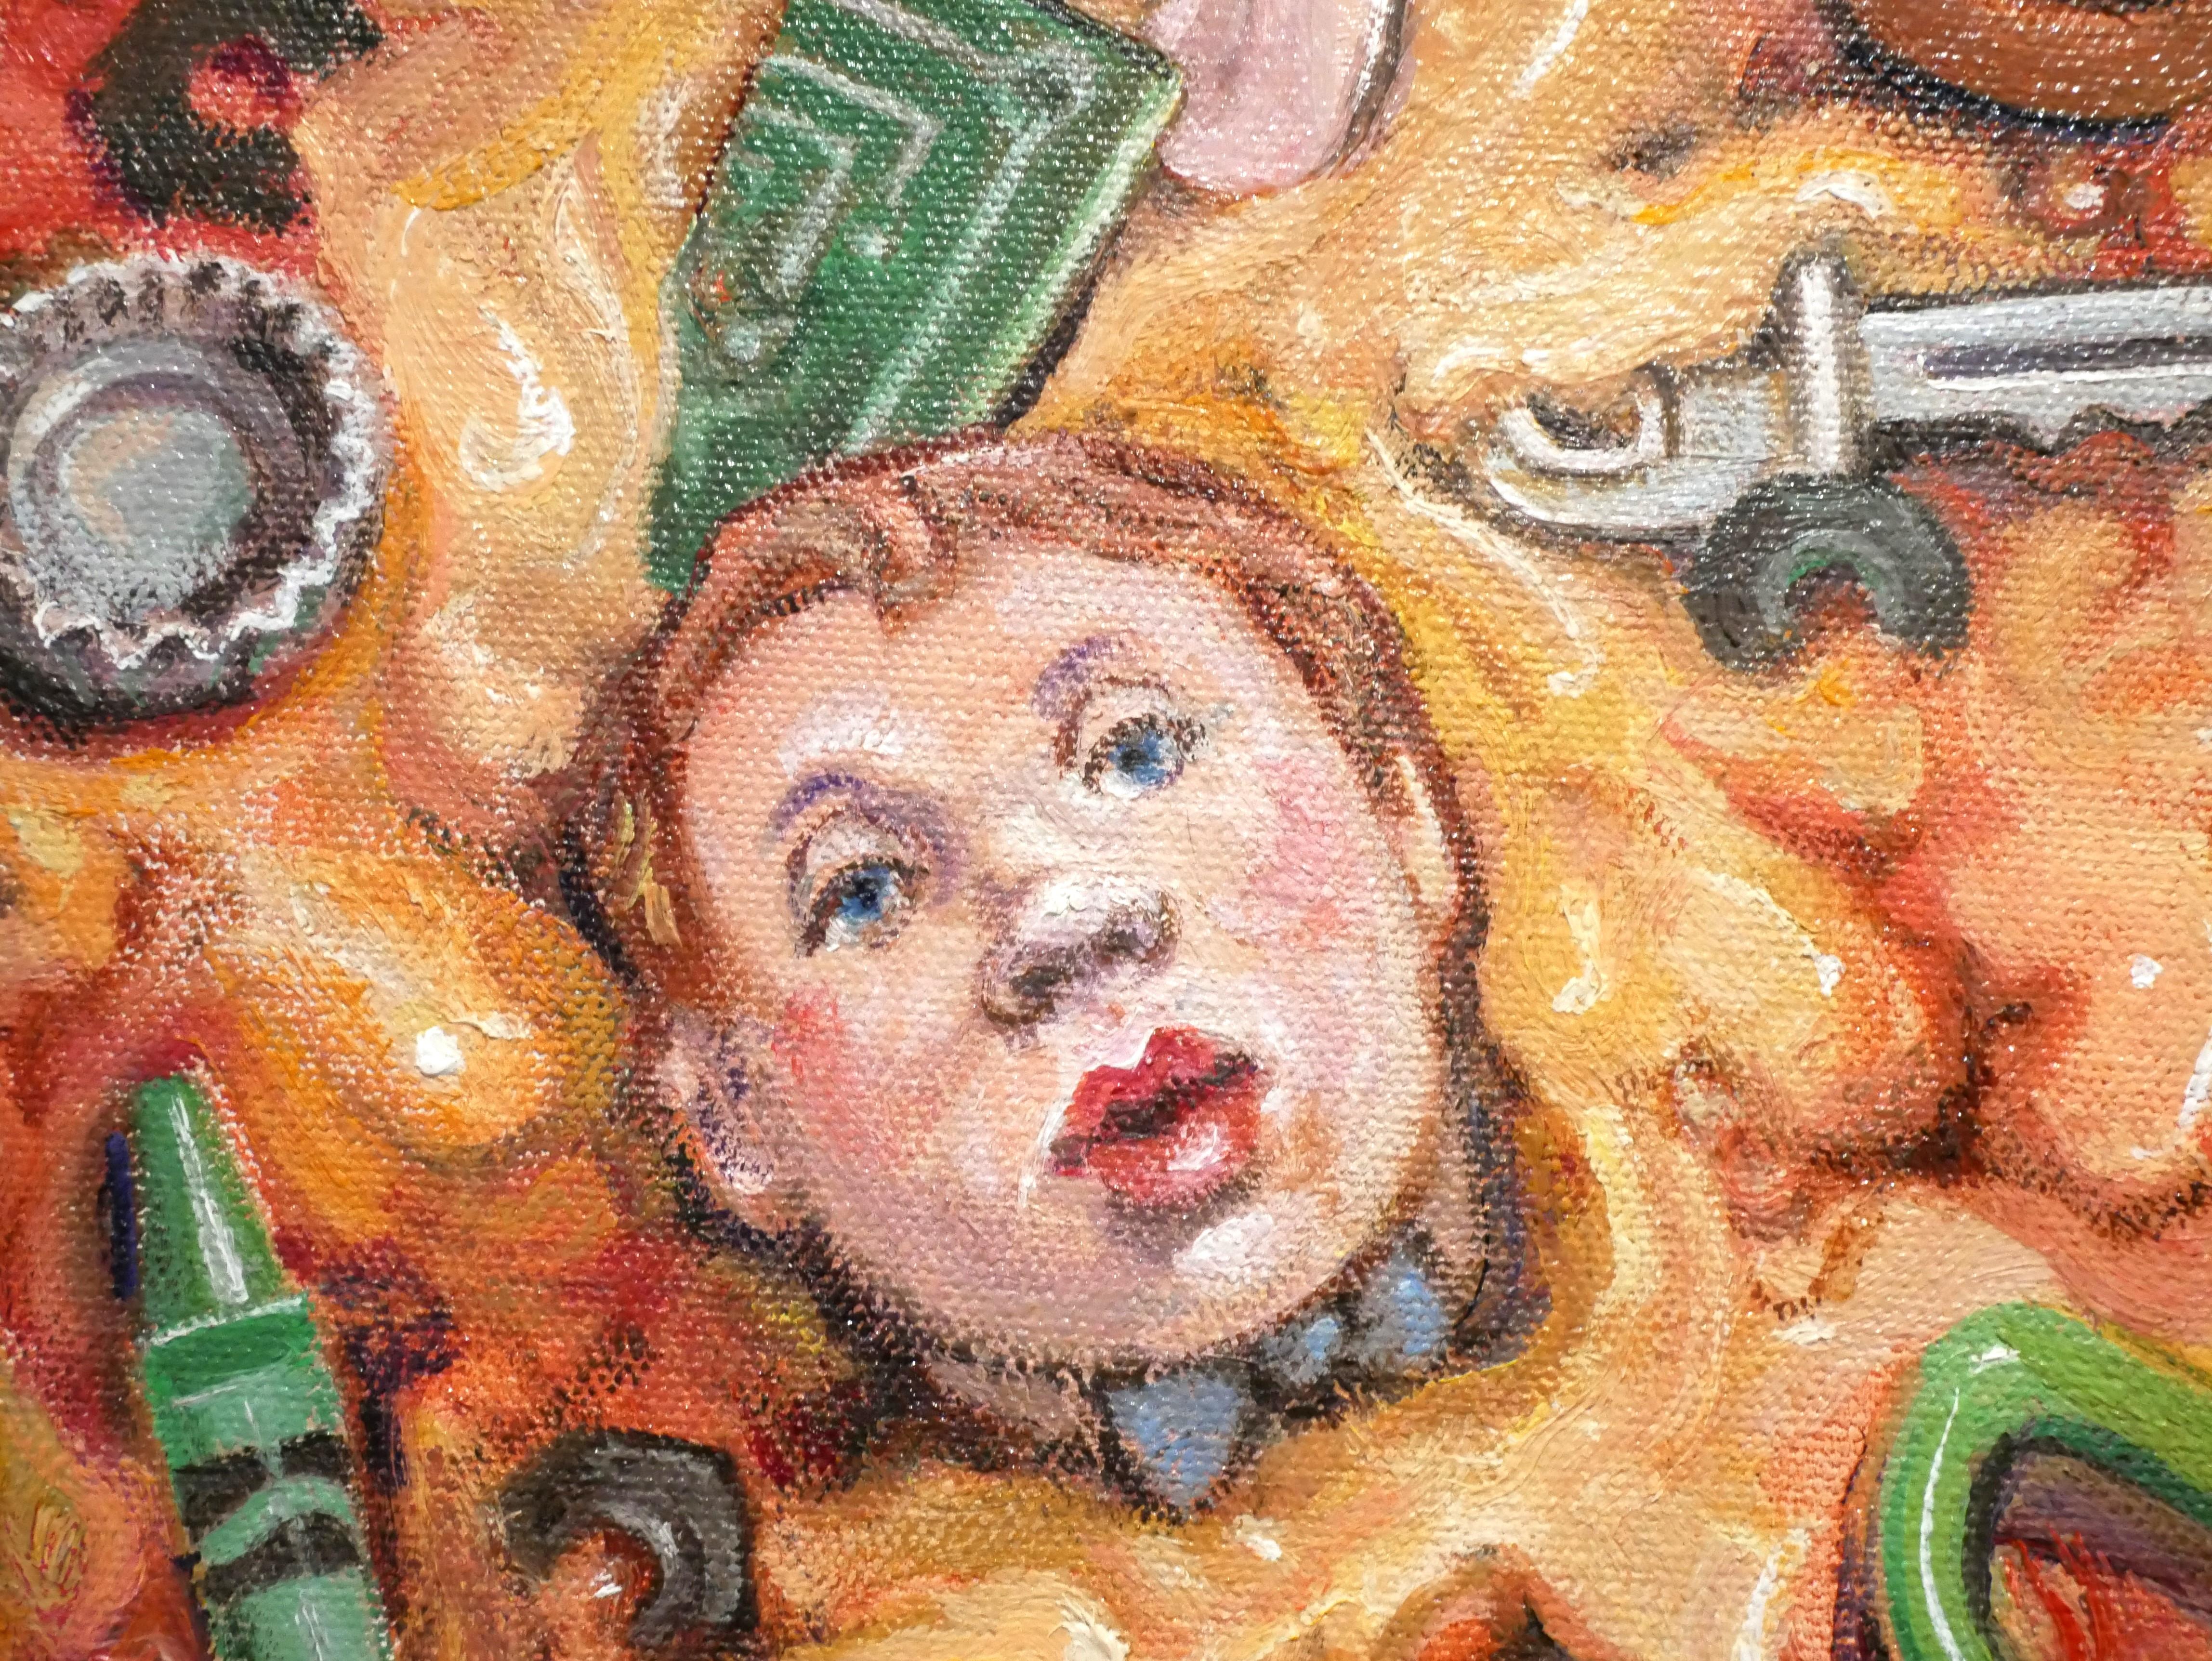 Farbenfrohes surrealistisches Stillleben des texanischen Künstlers Henry David Potwin. Das Werk zeigt eine geöffnete Pizzaschachtel mit verschiedenen ungenießbaren Belägen wie Scheren, einem Bleistift, einer Zahnbürste und Leiterplattenteilen.